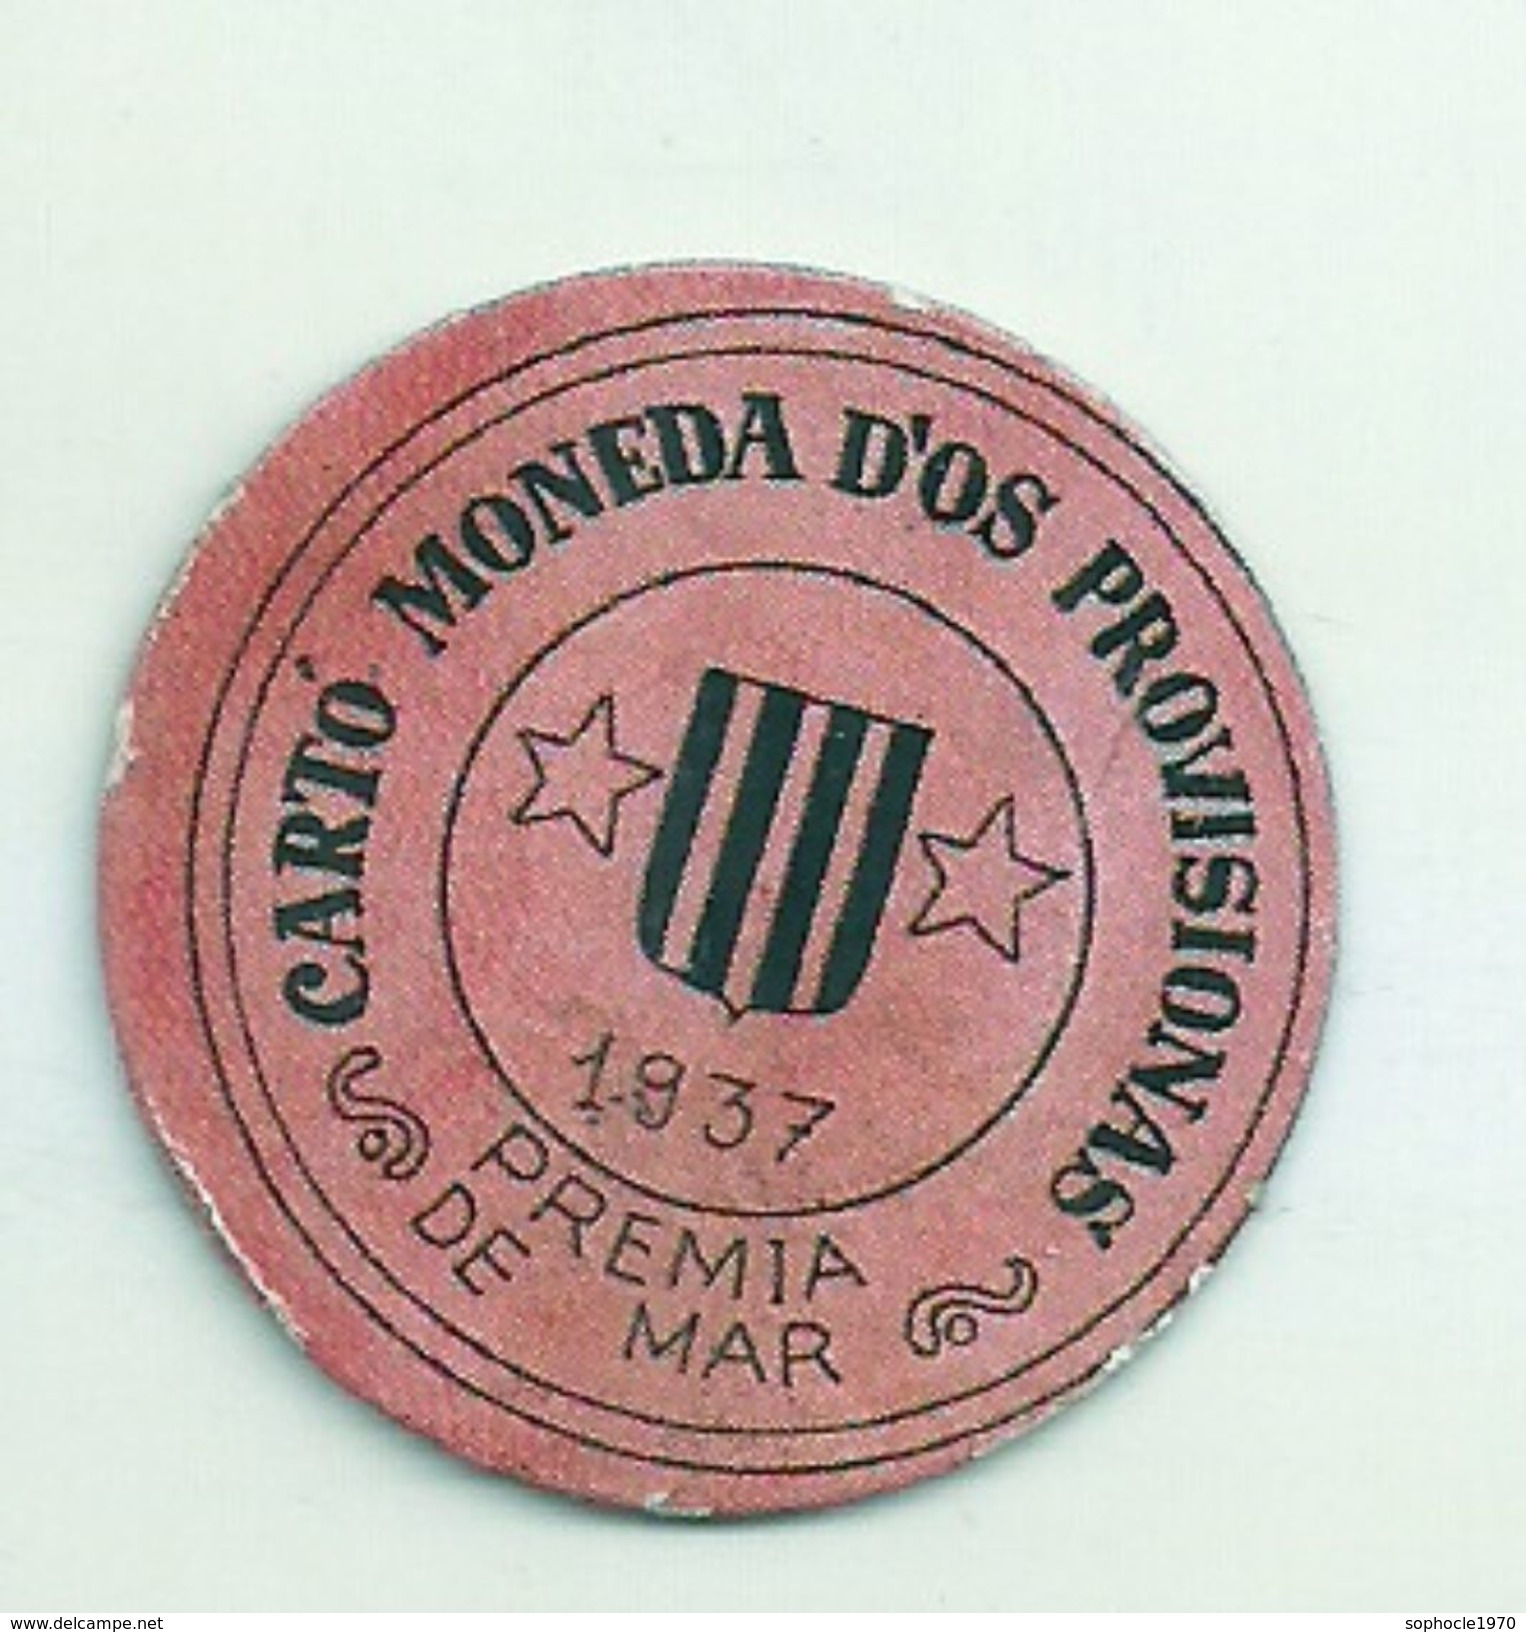 ESPAGNE - 1937 - République Espagnole  BARCELONE- PREMIA DE MAR -  Monéda D'Os Provisionas - Monnaie Carton Timbre -  Monnaies De Nécessité